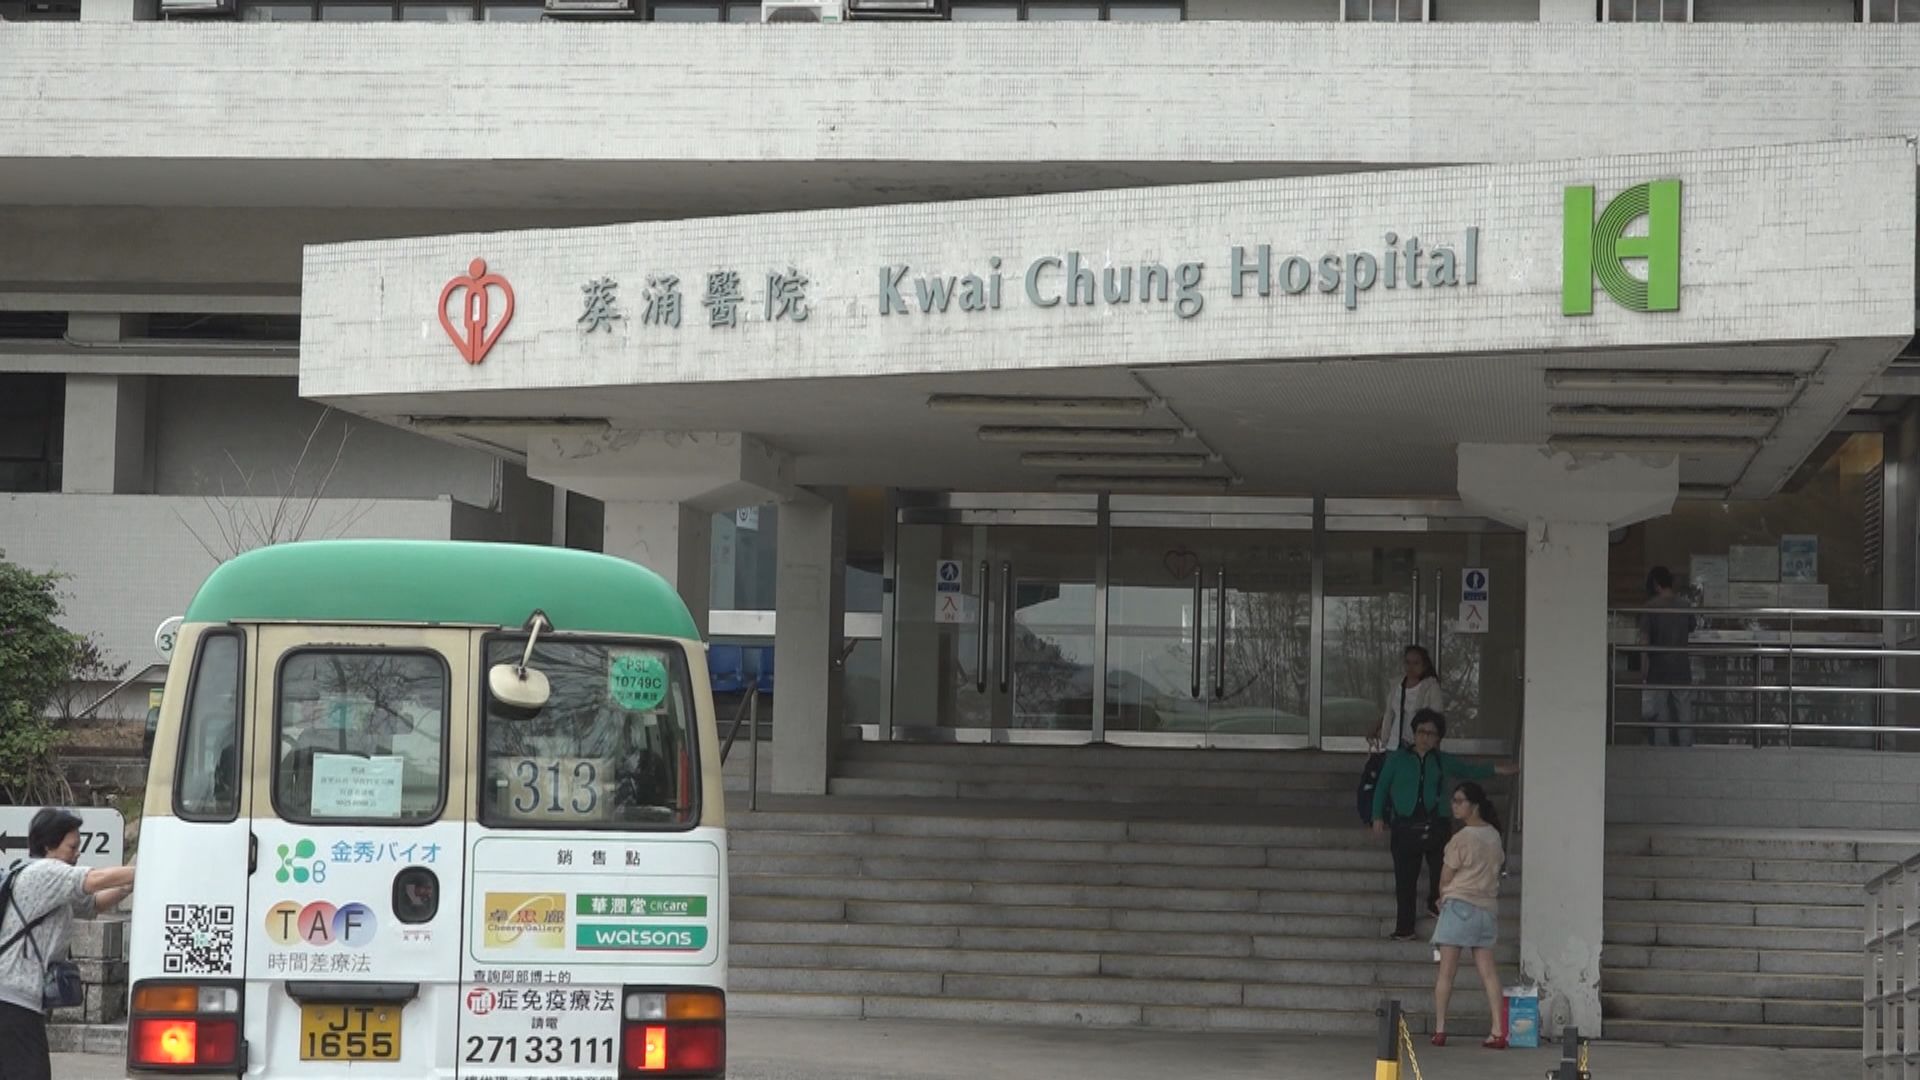 葵涌醫院80歲女病人疑受襲 同房17歲女病人被約束